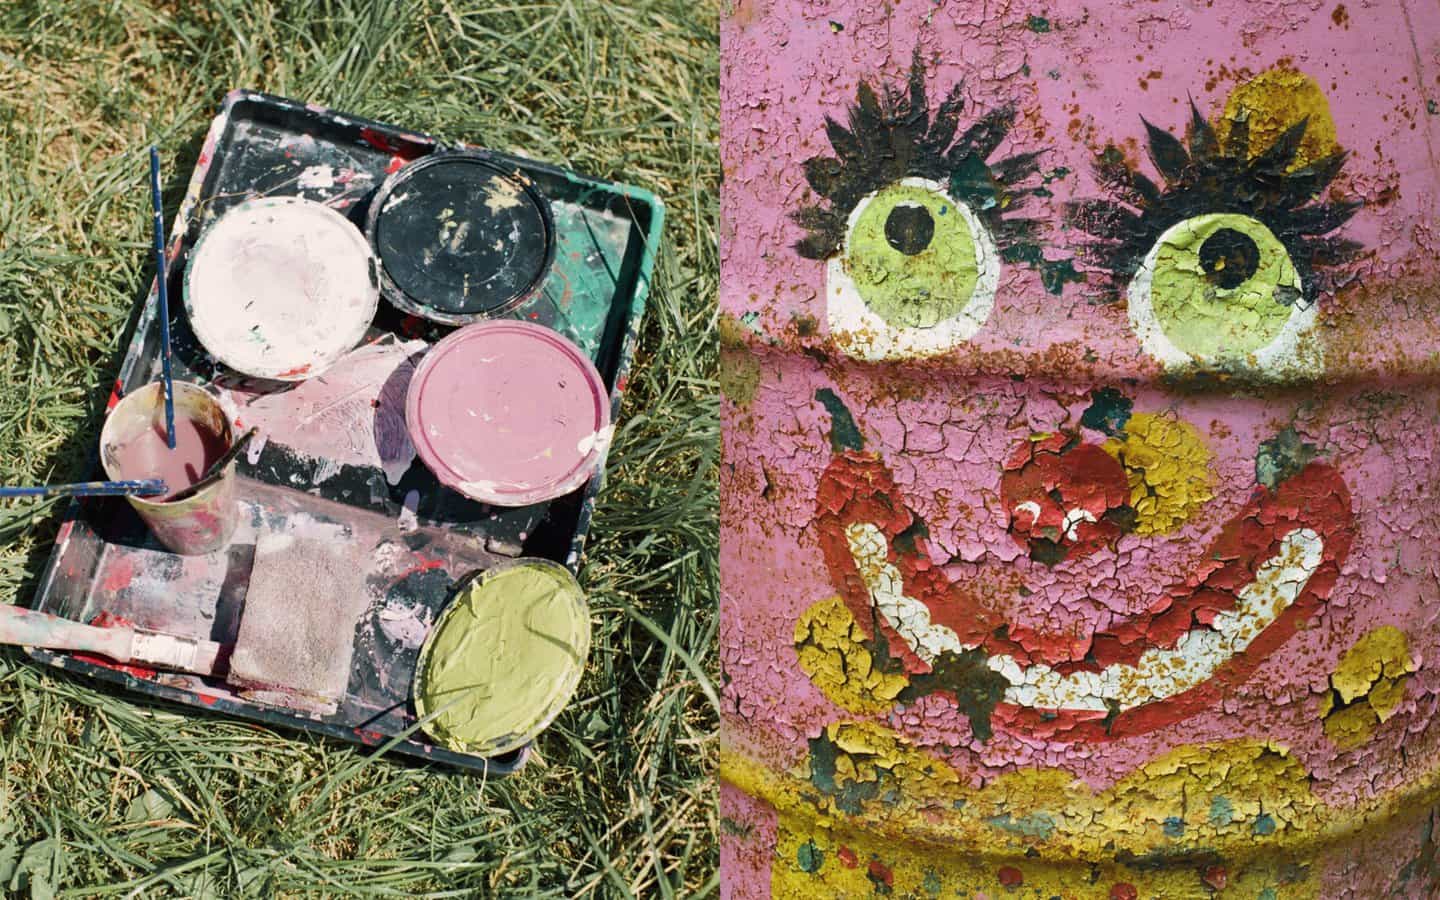 La basura de un hombre... descubre el maravilloso mundo creativo de los contenedores pintados de Glastonbury